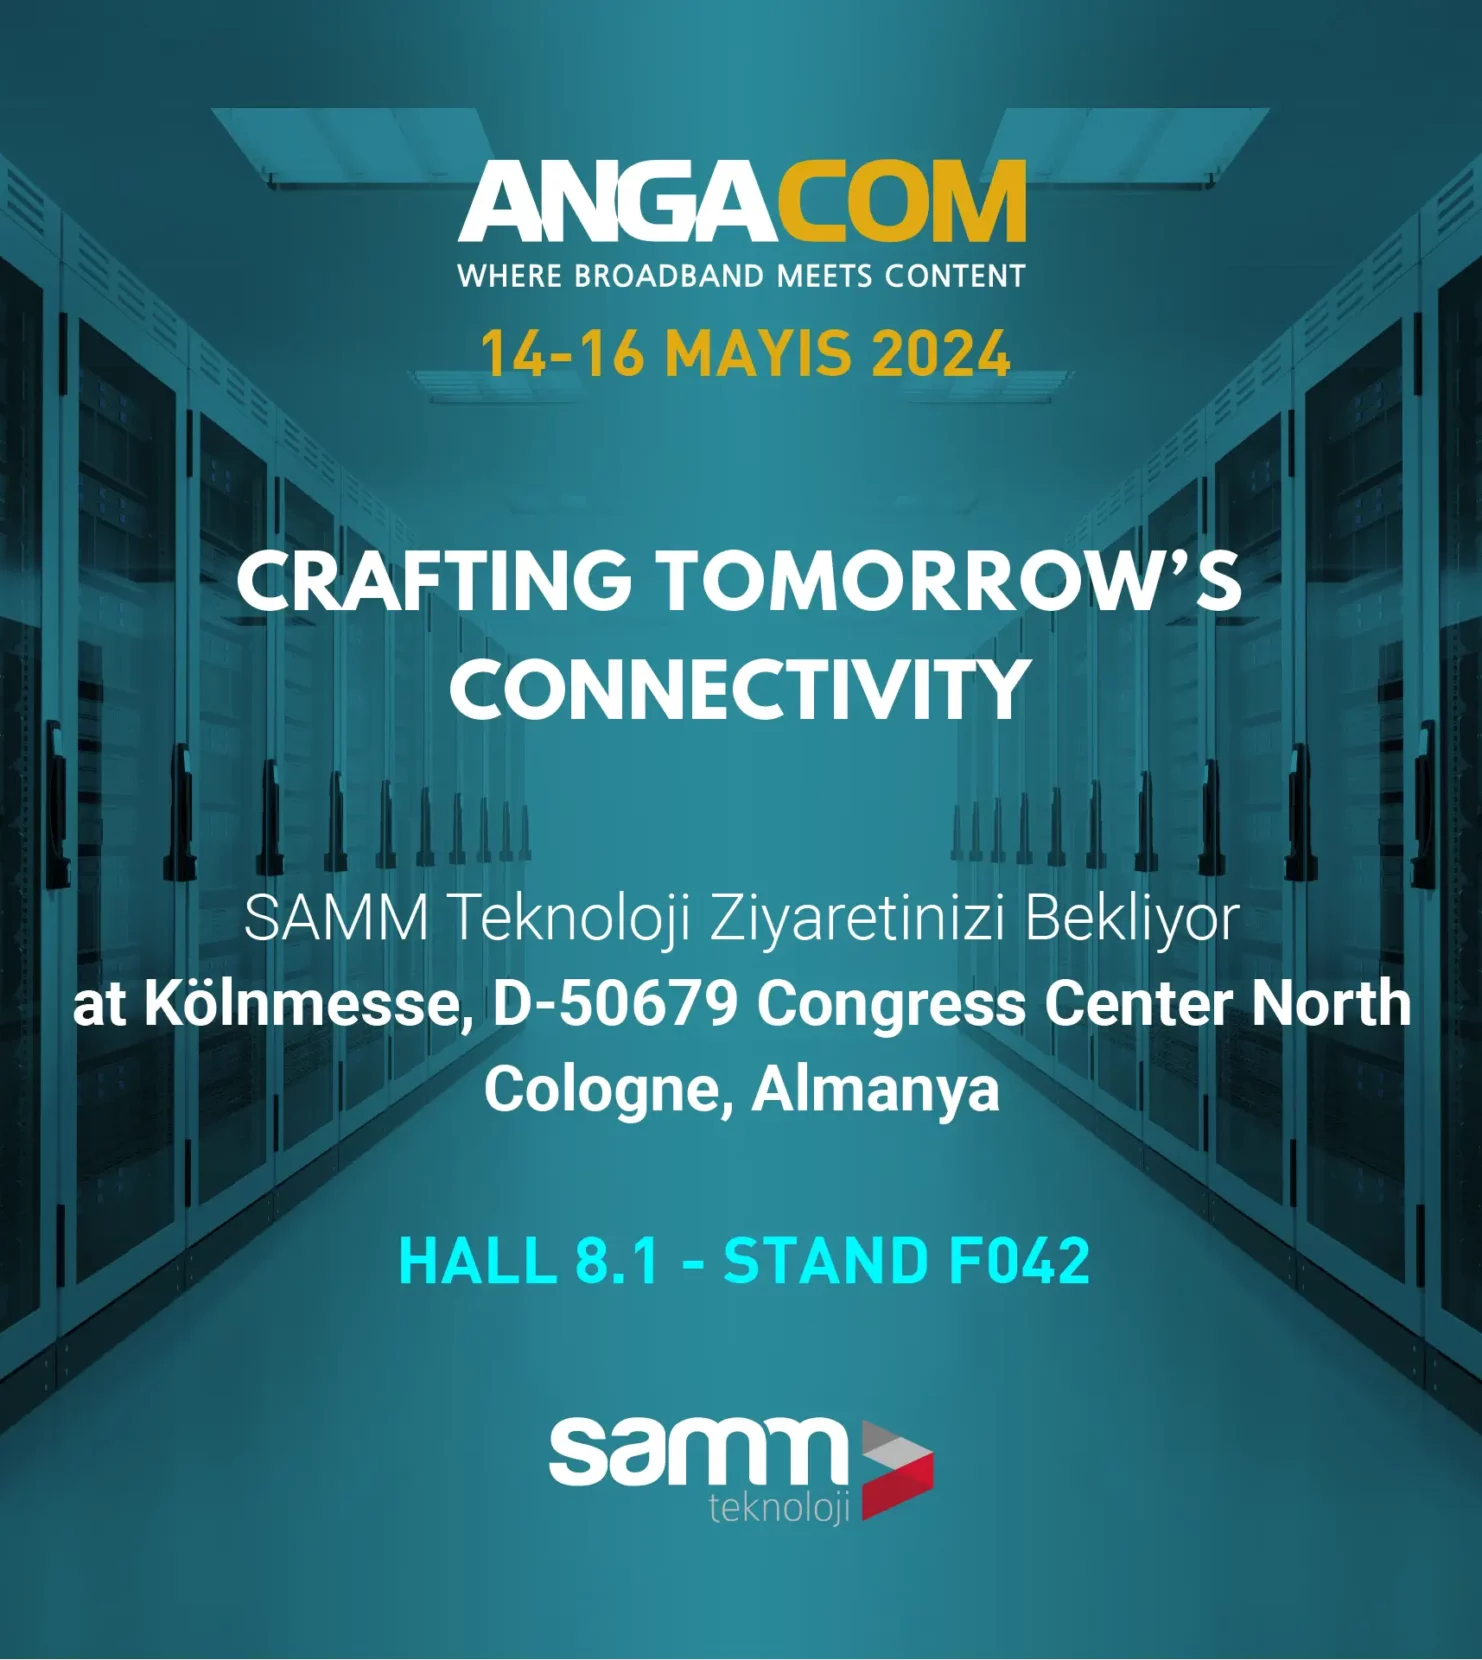 SAMM Teknoloji Ziyaretinizi Bekliyor - AngaCom 2024